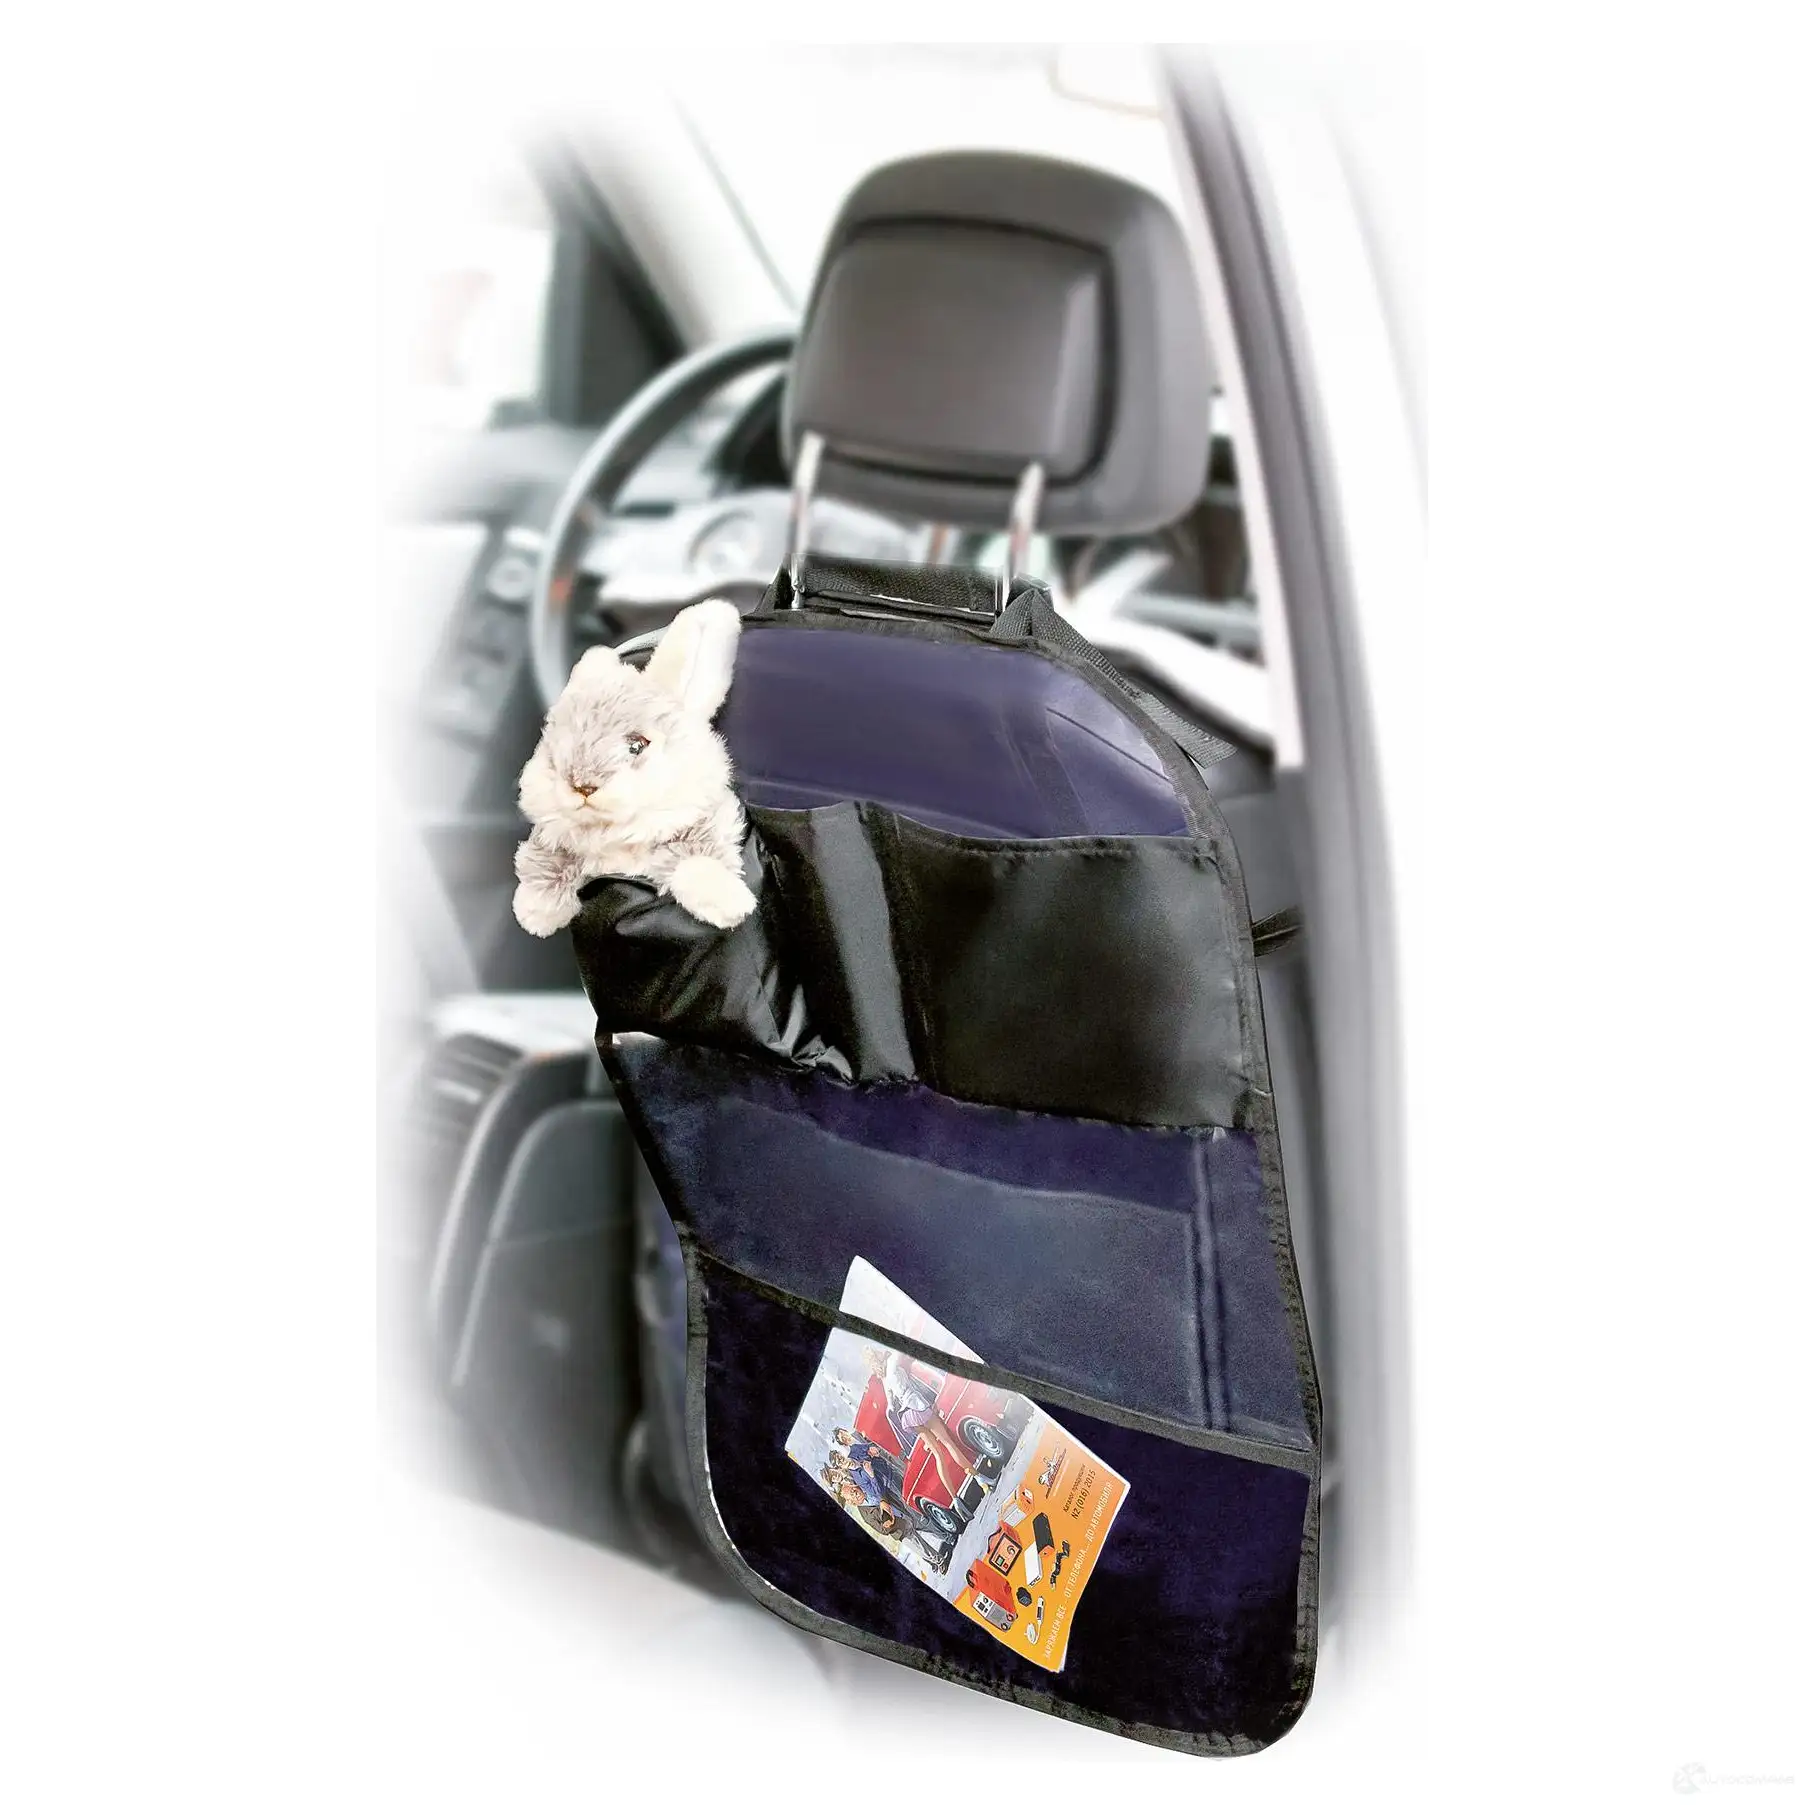 Накидка защитная на спинку переднего сиденья (65*50 см), ПВХ, прозрачная, с карманами AIRLINE 6CVRI 9 aocs19 1438173135 изображение 1